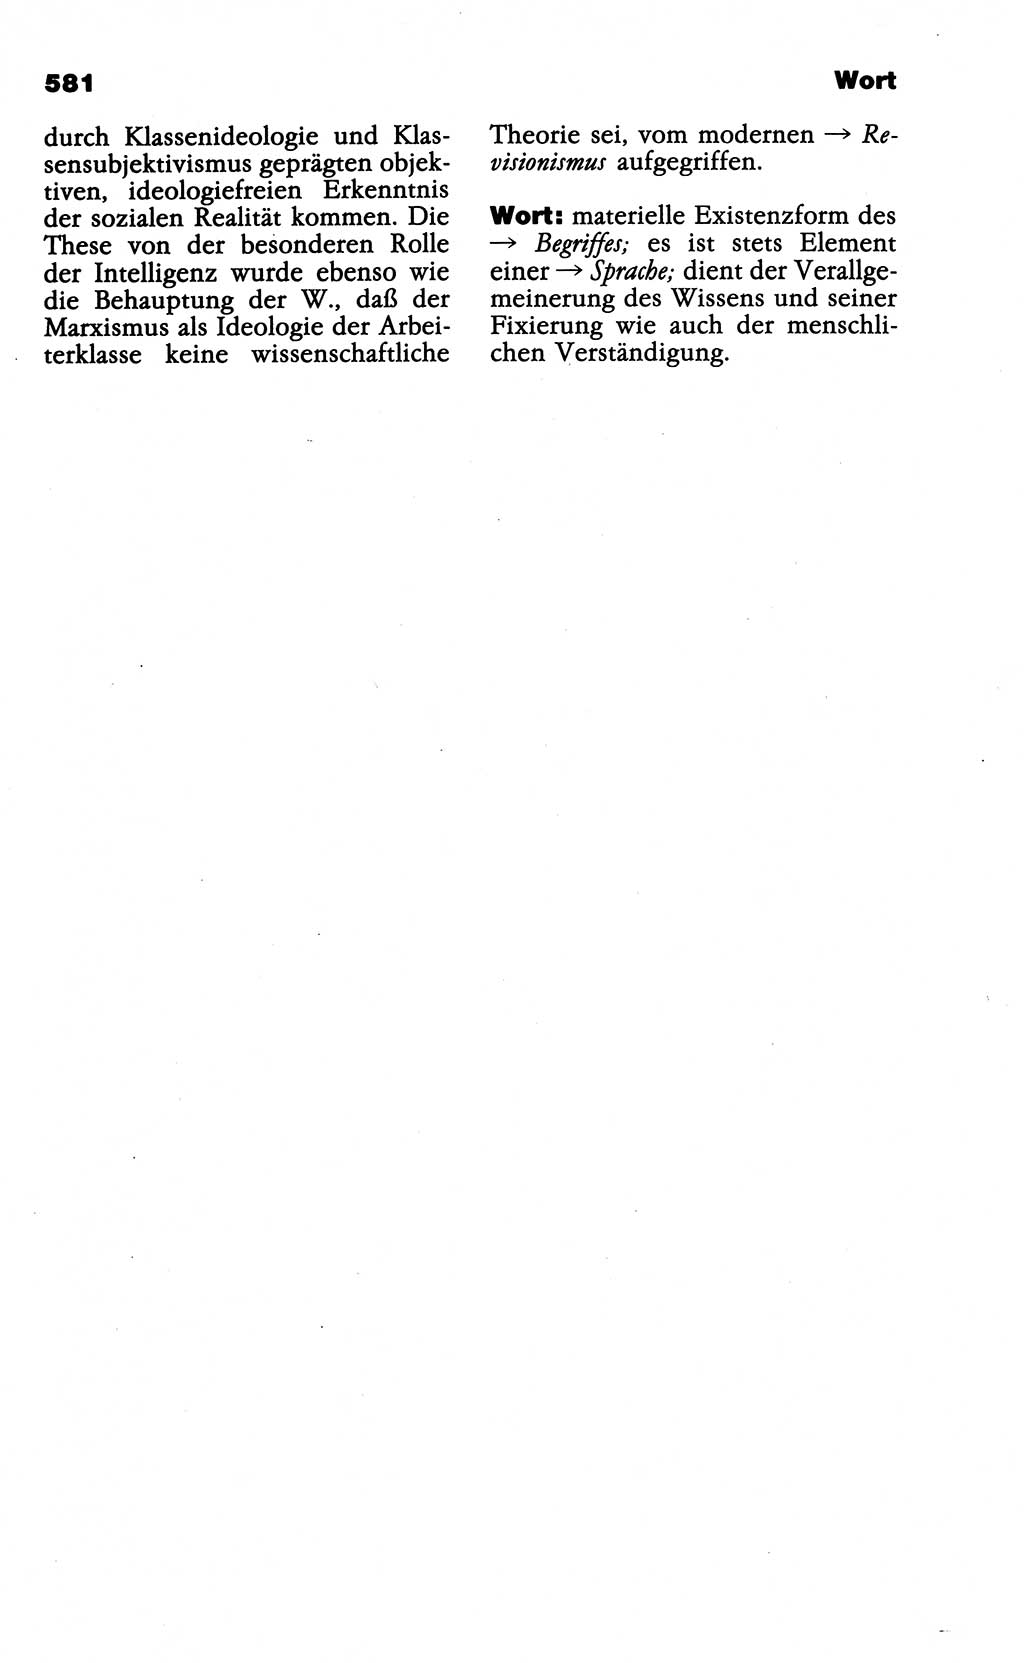 Wörterbuch der marxistisch-leninistischen Philosophie [Deutsche Demokratische Republik (DDR)] 1985, Seite 581 (Wb. ML Phil. DDR 1985, S. 581)